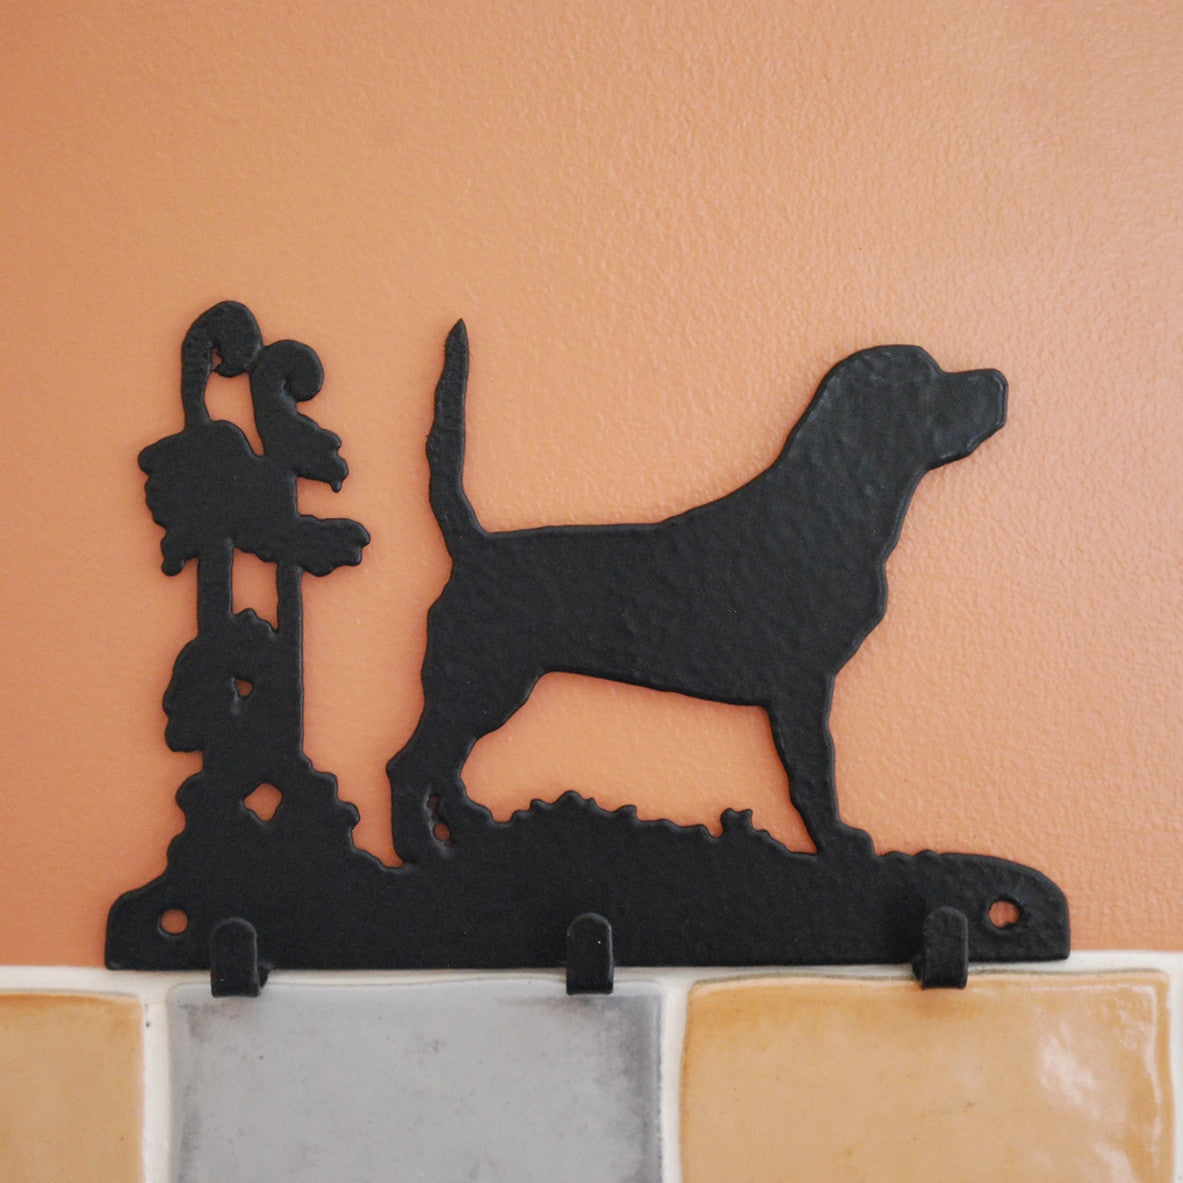 Scottie Dog Key Racks - 3 Hooks - Fernie's Choice Classic Country Wear for Dogs